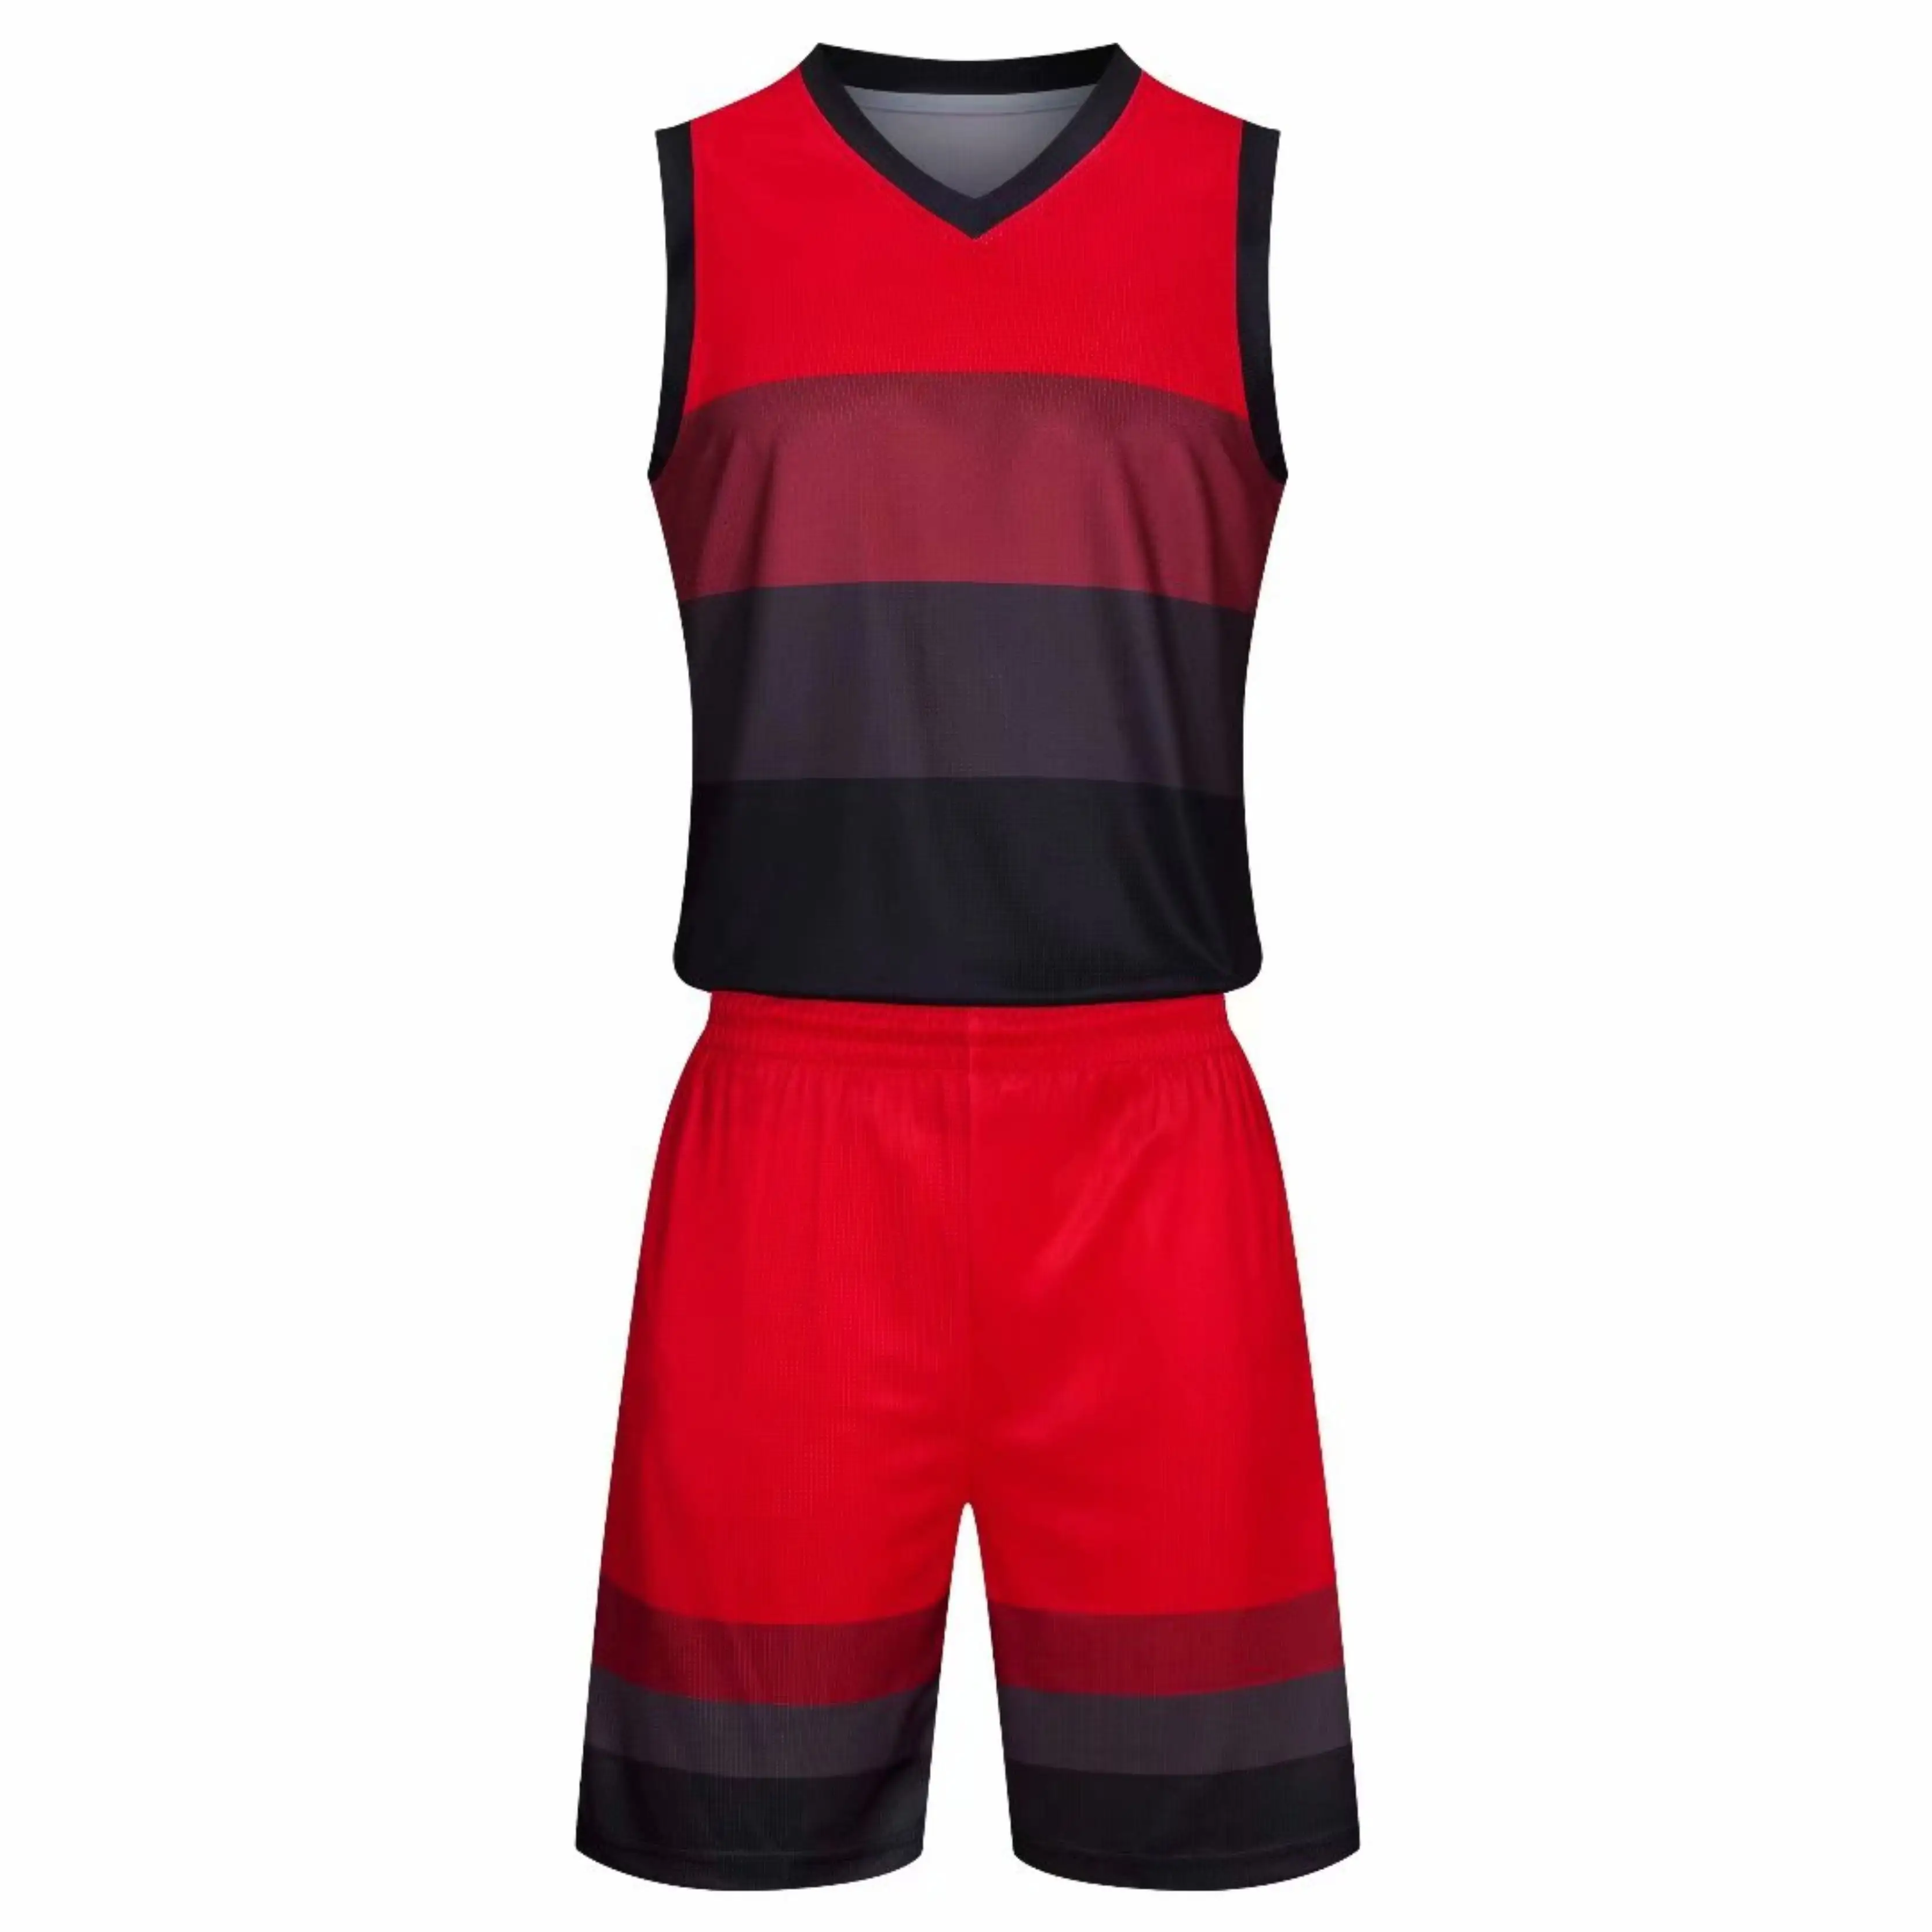 Basketball Jerseys Kids Children Outdoor Sportswear Boys Sleeveless Basketball Uniform